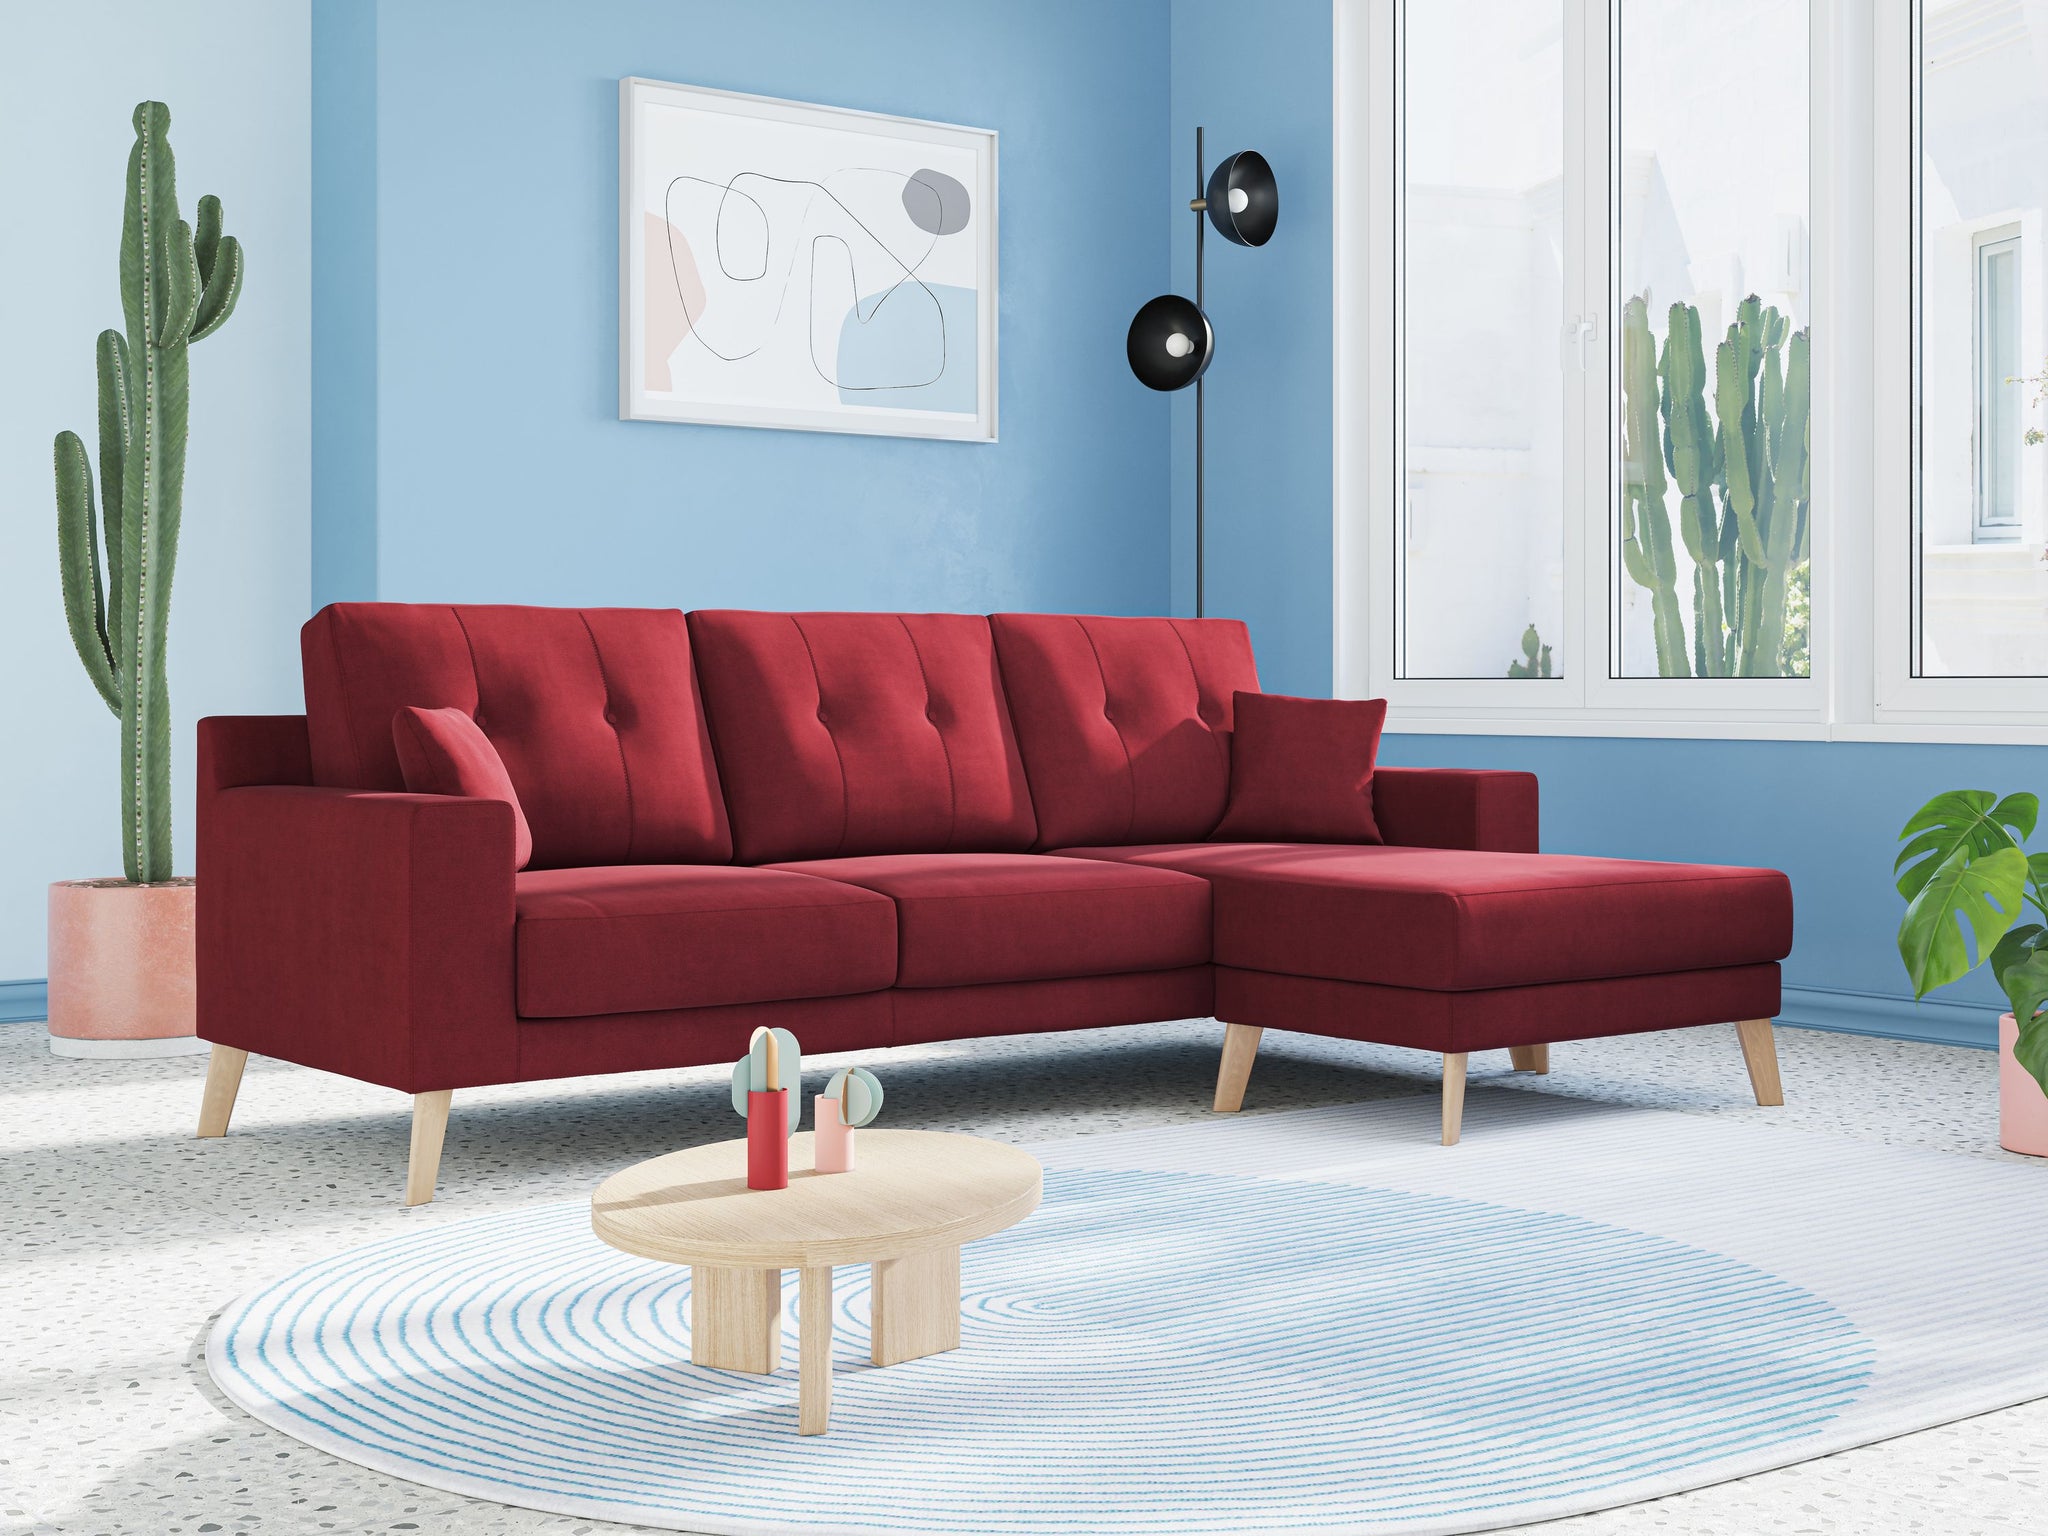 Danish divano angolare REVERSIBILE in tessuto morbido impermeabile T02